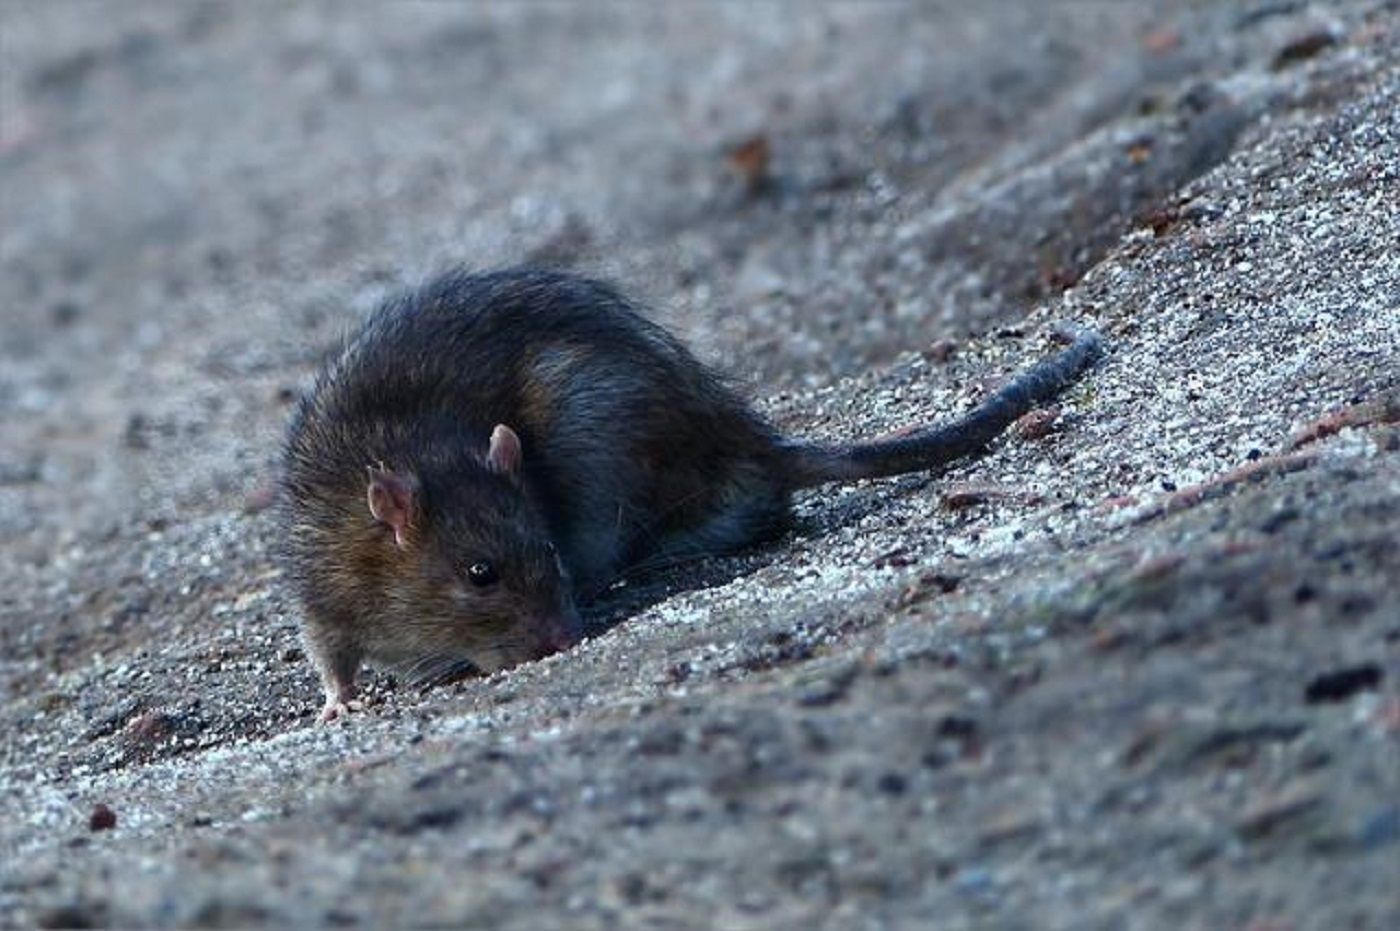 Denuncien una plaga de rates al districte de Sant Martí de Barcelona